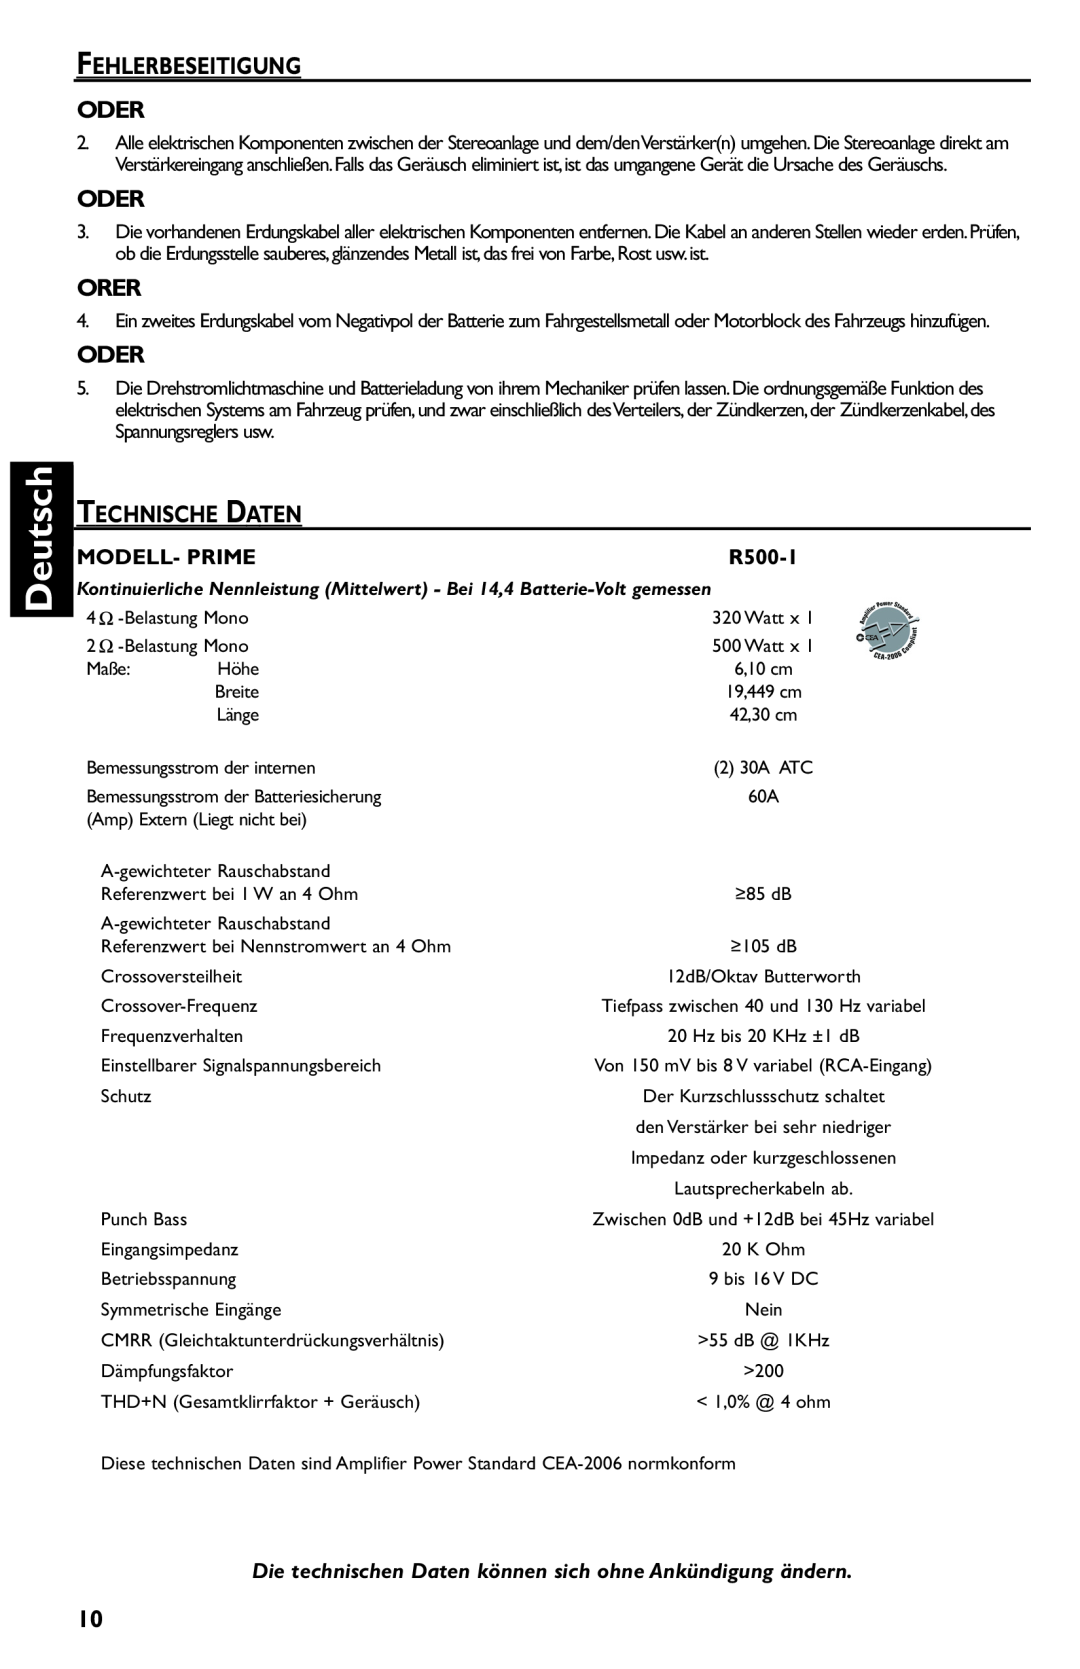 Rockford Fosgate R500-1 manual Deutsch, Fehlerbeseitigung Oder, Orer, Technische Daten 